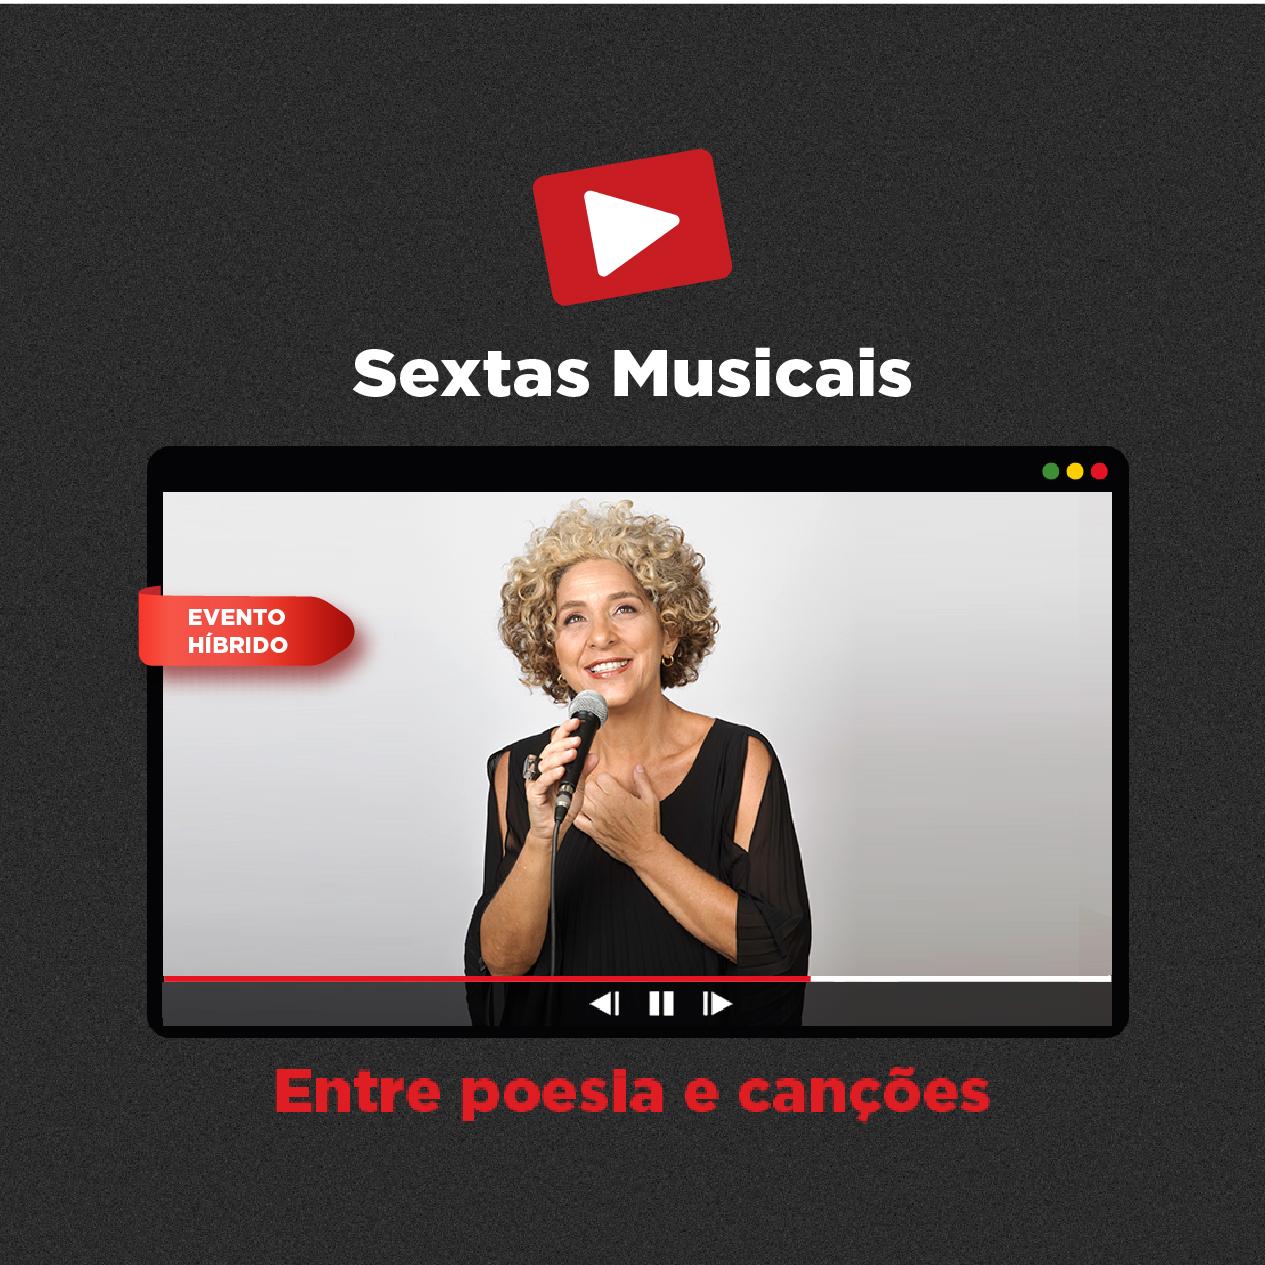 Sextas Musicais - Live streaming: Entre poesia e canções